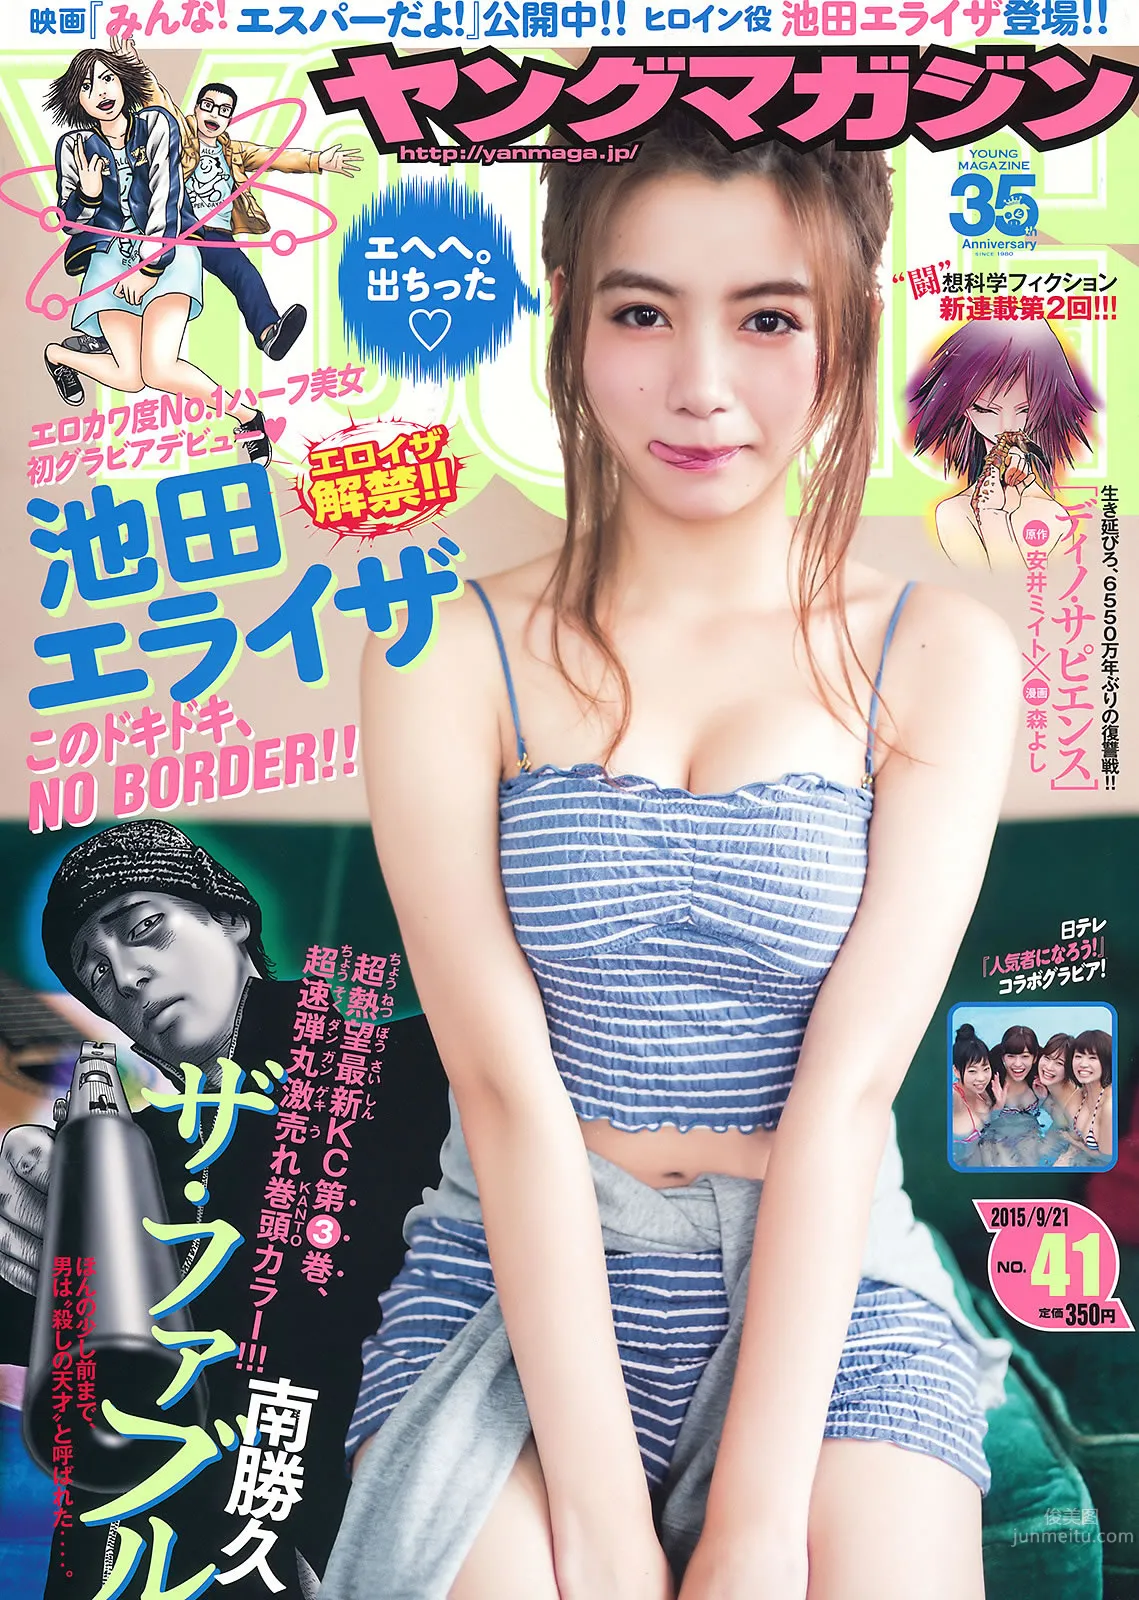 [Young Magazine] 2015 No.39-41 浅川梨奈 真野恵里菜 浜辺美波 池田エライザ_1